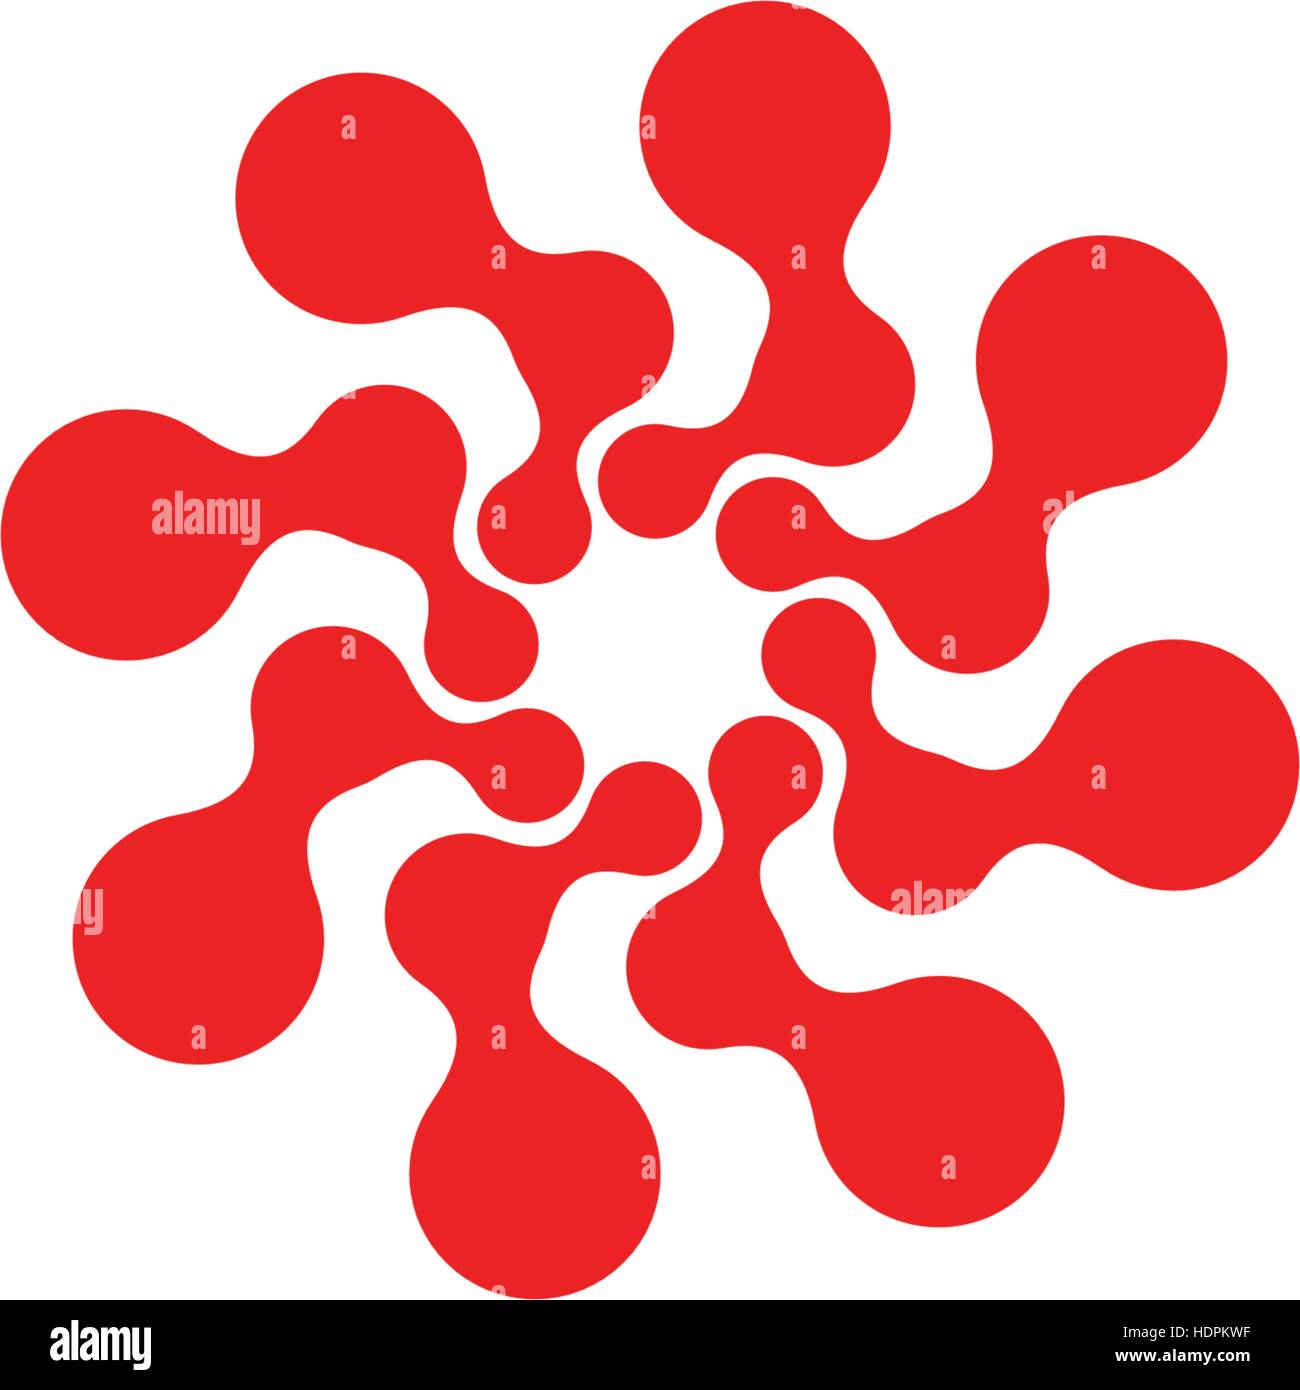 Abstrakt Kreis Logo. Ungewöhnliche gepunktete Runde isolierte Chem Logo. Virus-Symbol. Rote Sonne. Symbolblume. Spiral-Zeichen. Vektor-Illustration. Stock Vektor